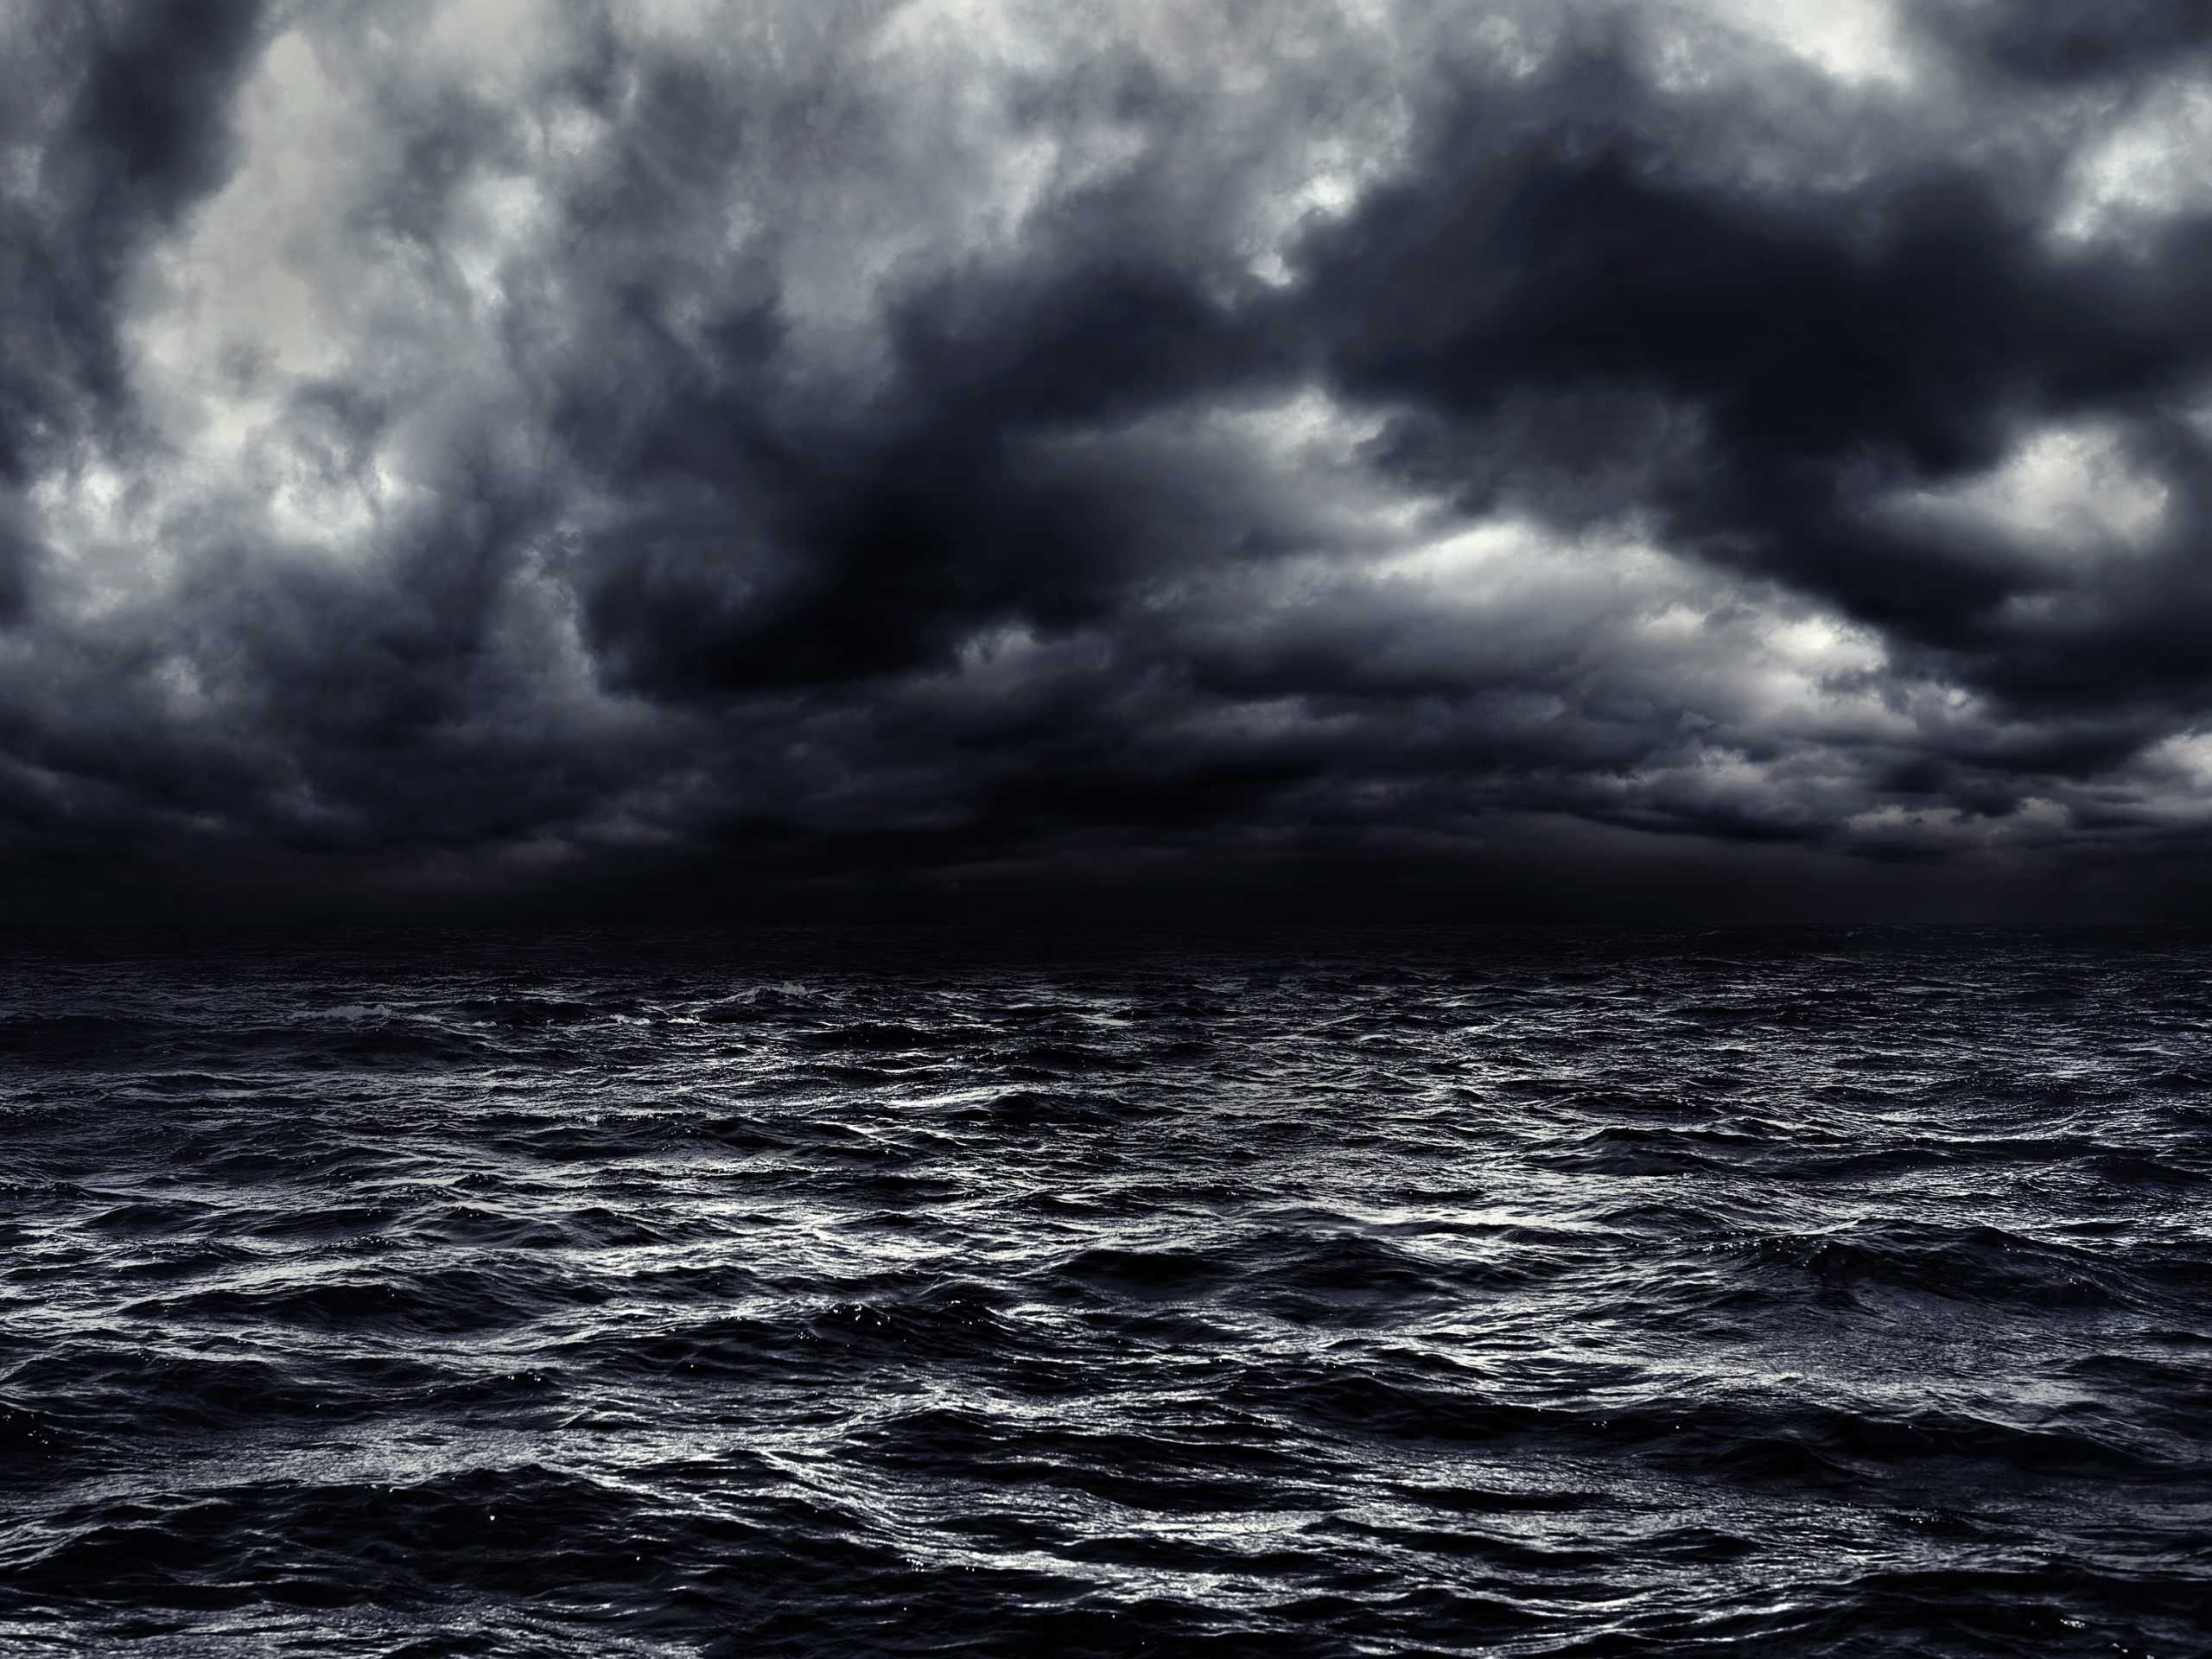 A dark stormy sea